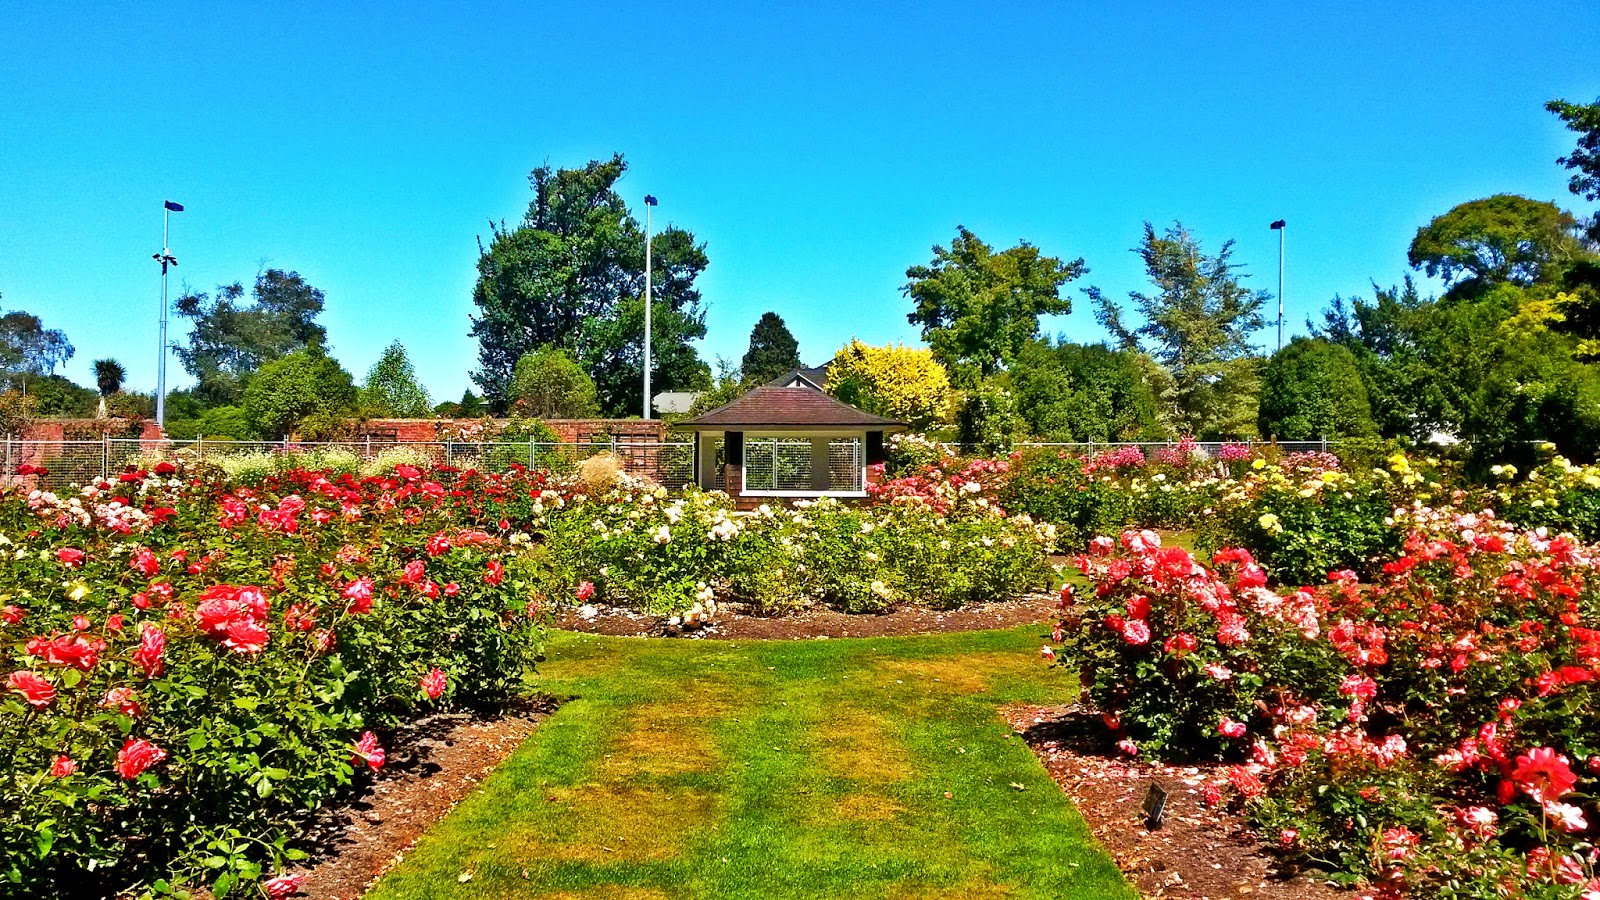 Mona Vale Gardens, New Zealand @Festistmirmhycz